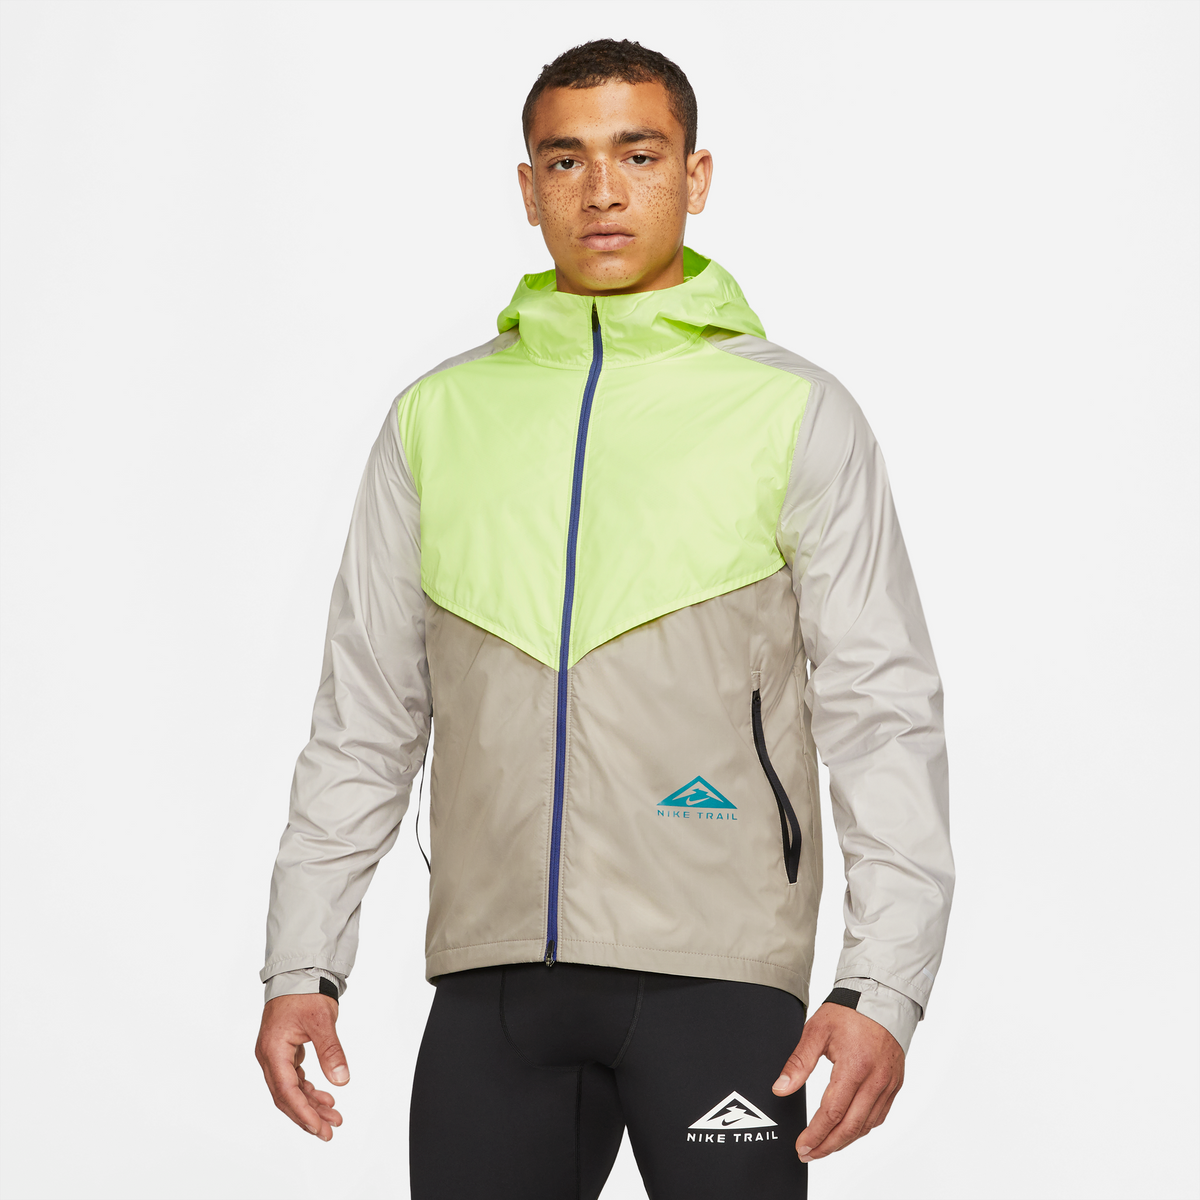 Nike-Men's Nike Windrunner Jacket-Light Lemon Twist/Moon Fossil/Bright Spruce-Pacers Running